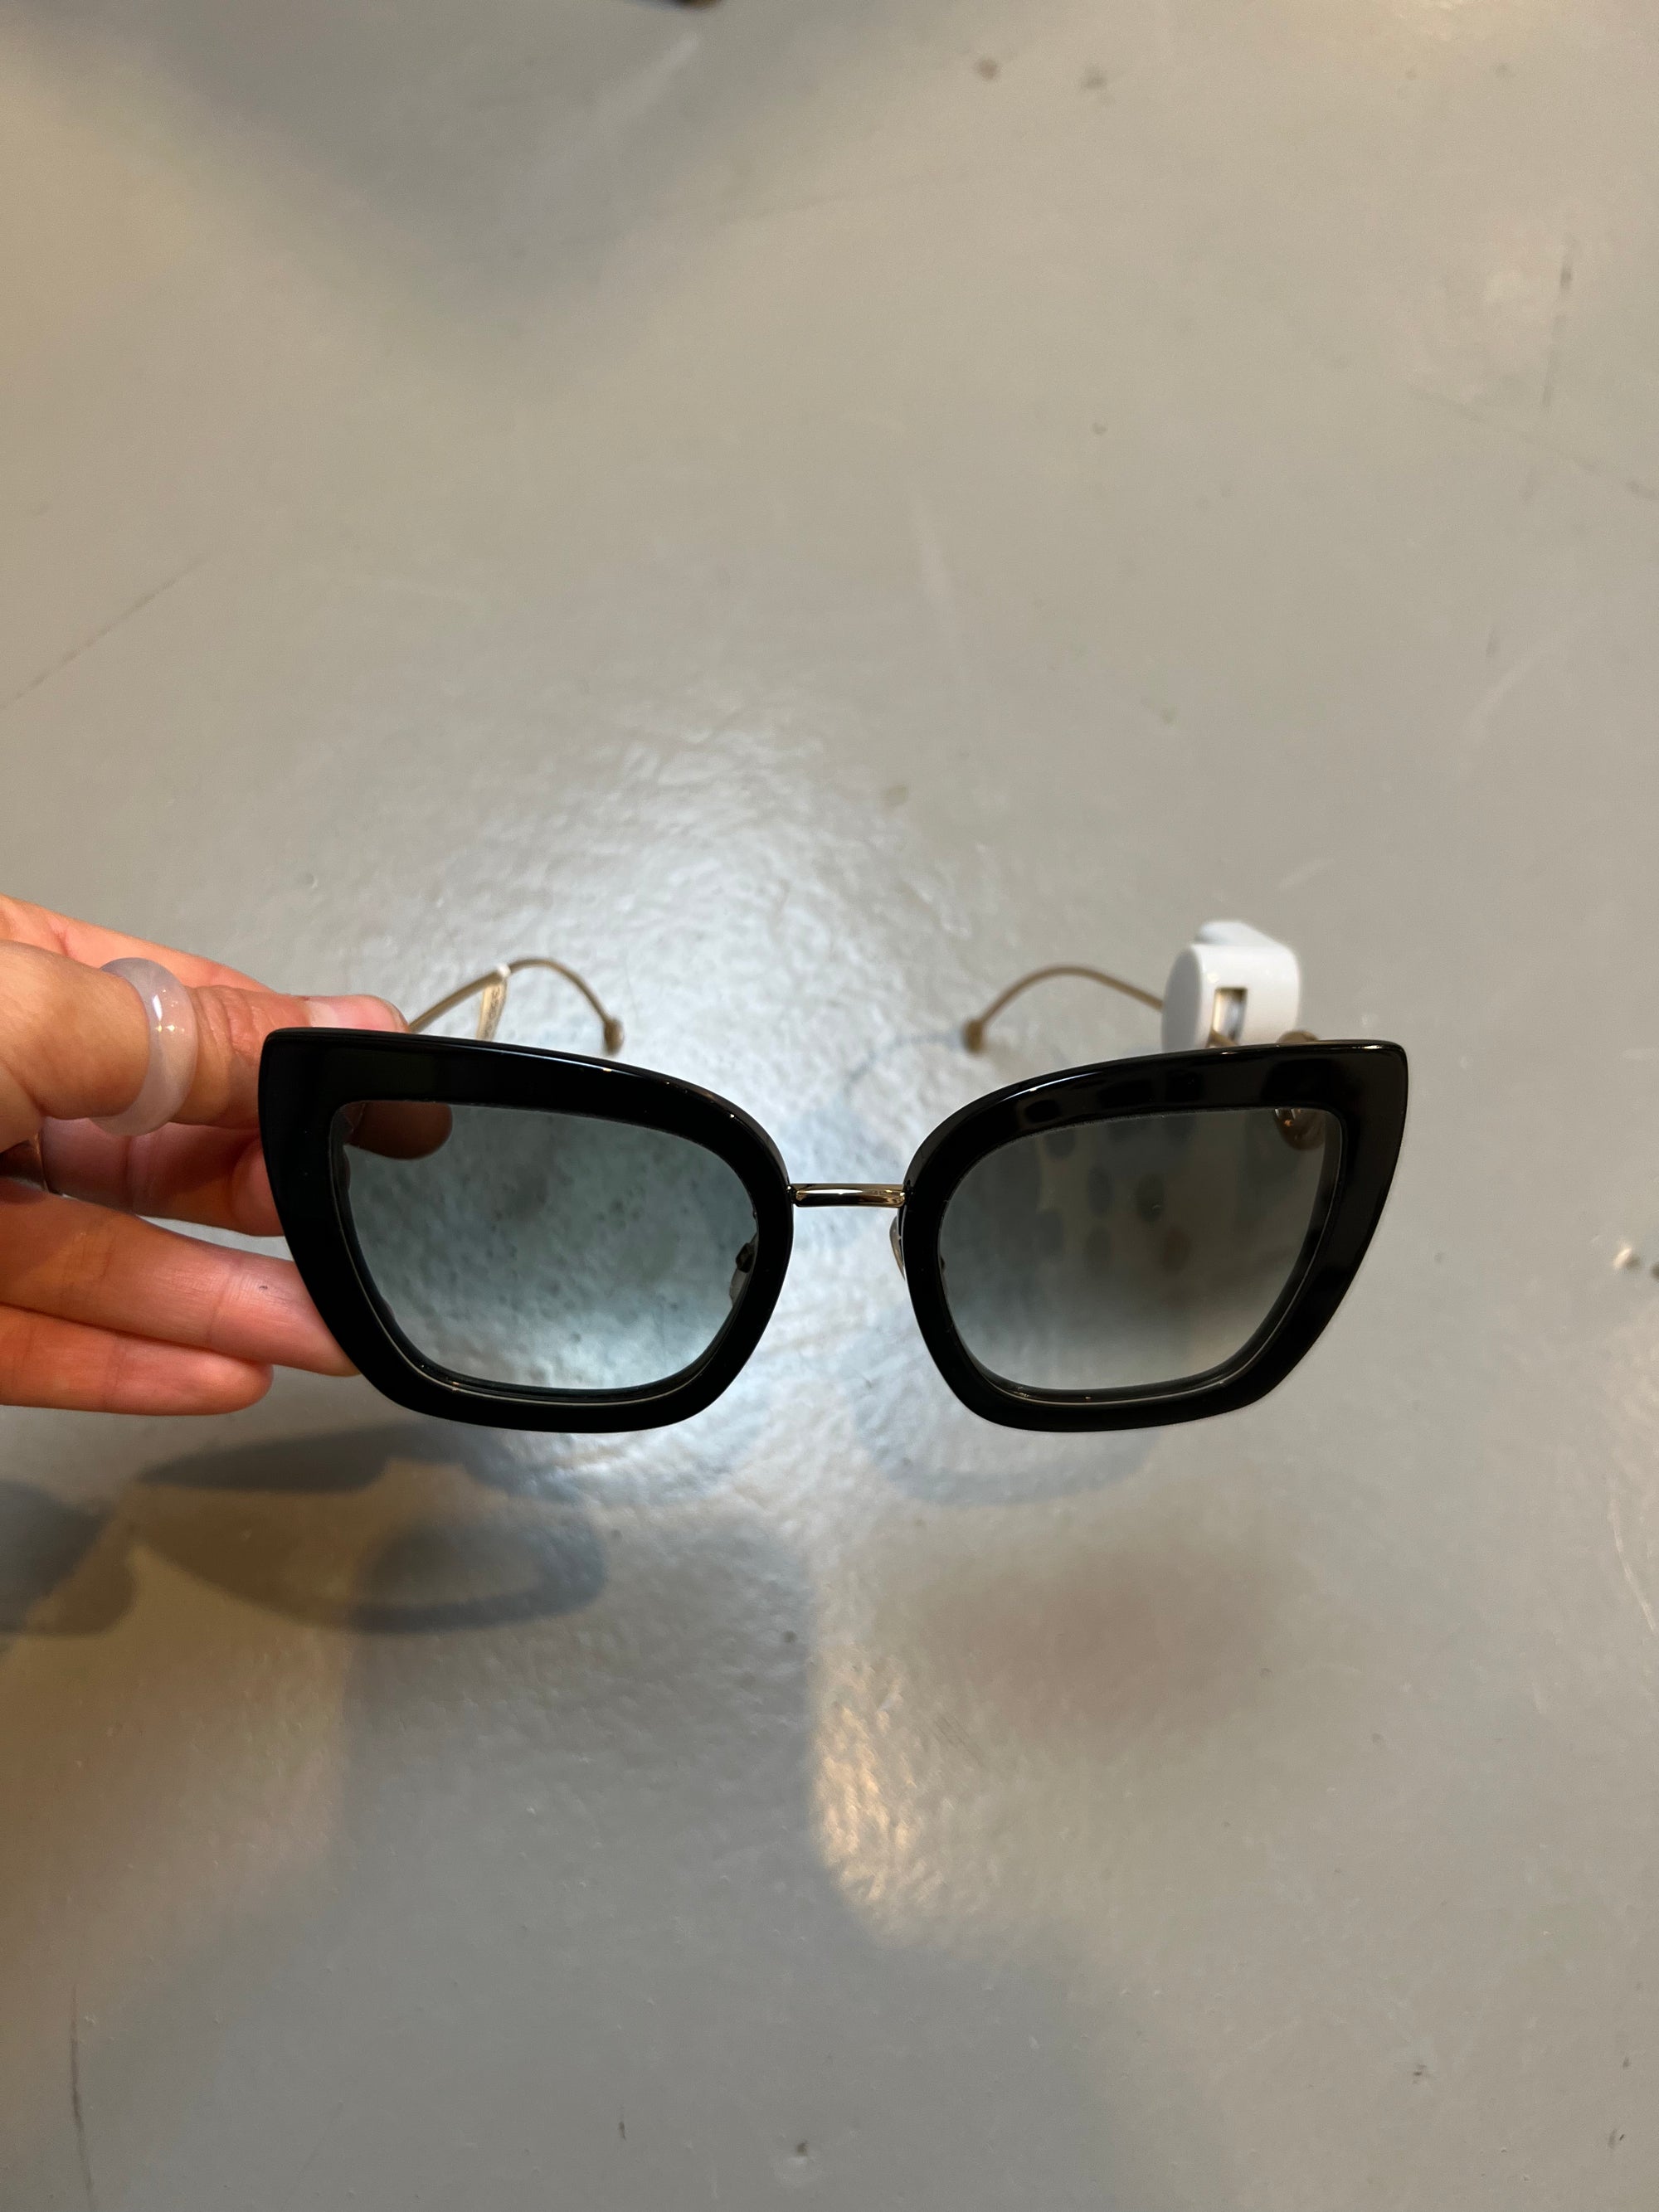 Produktbild von einer schwarzen Fendi Sonnenbrille auf grauem Boden.